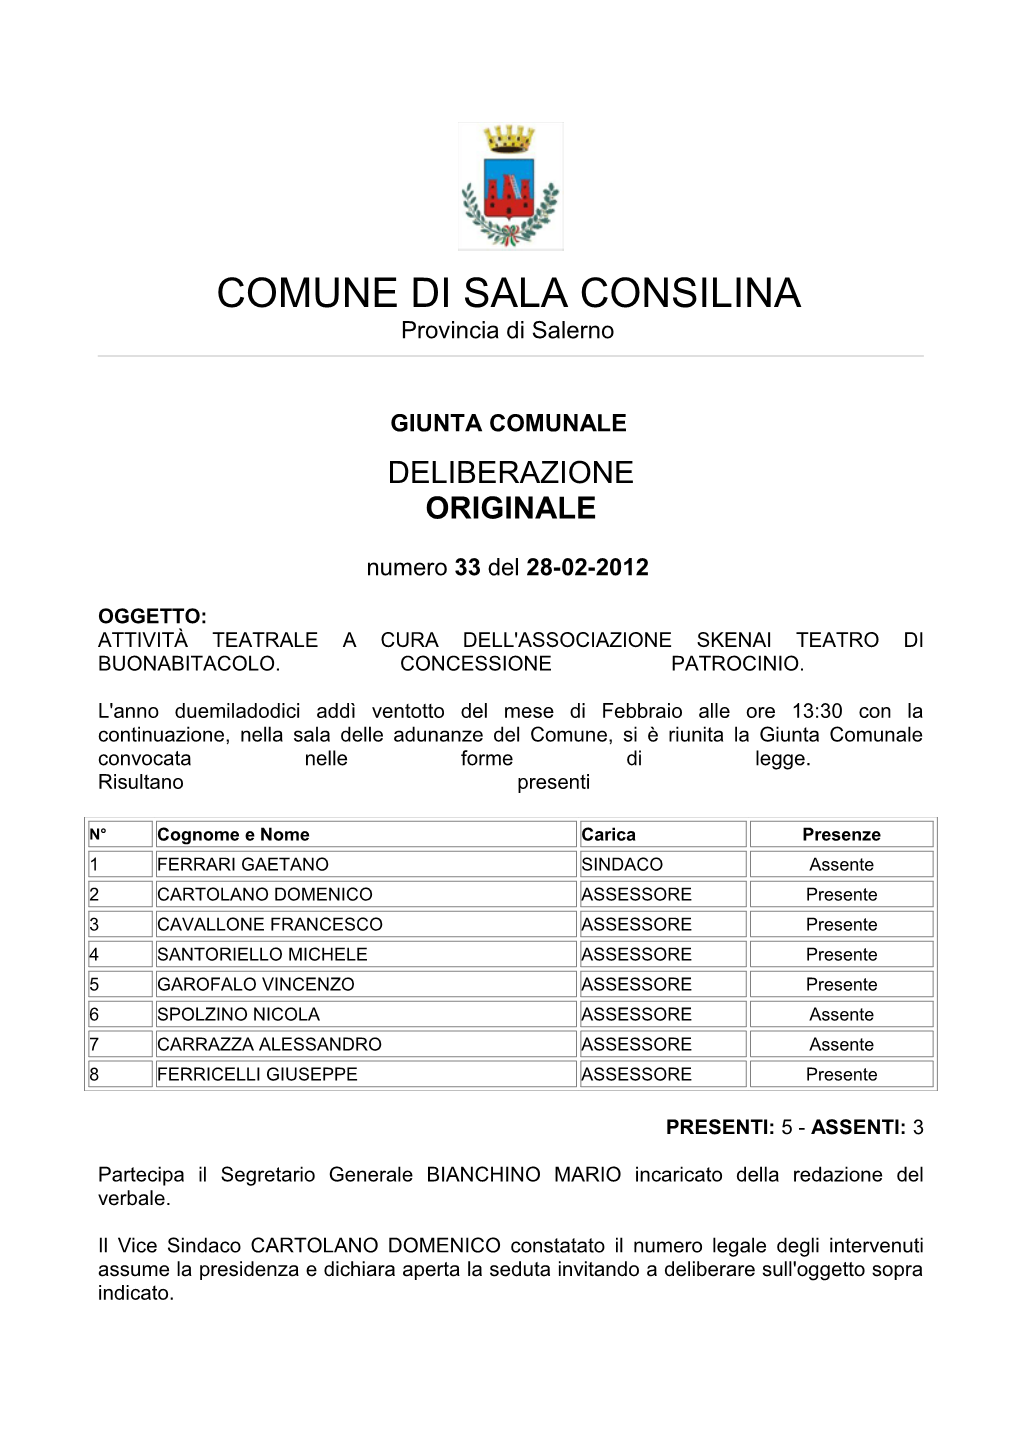 COMUNE DI SALA CONSILINA Provincia Di Salerno